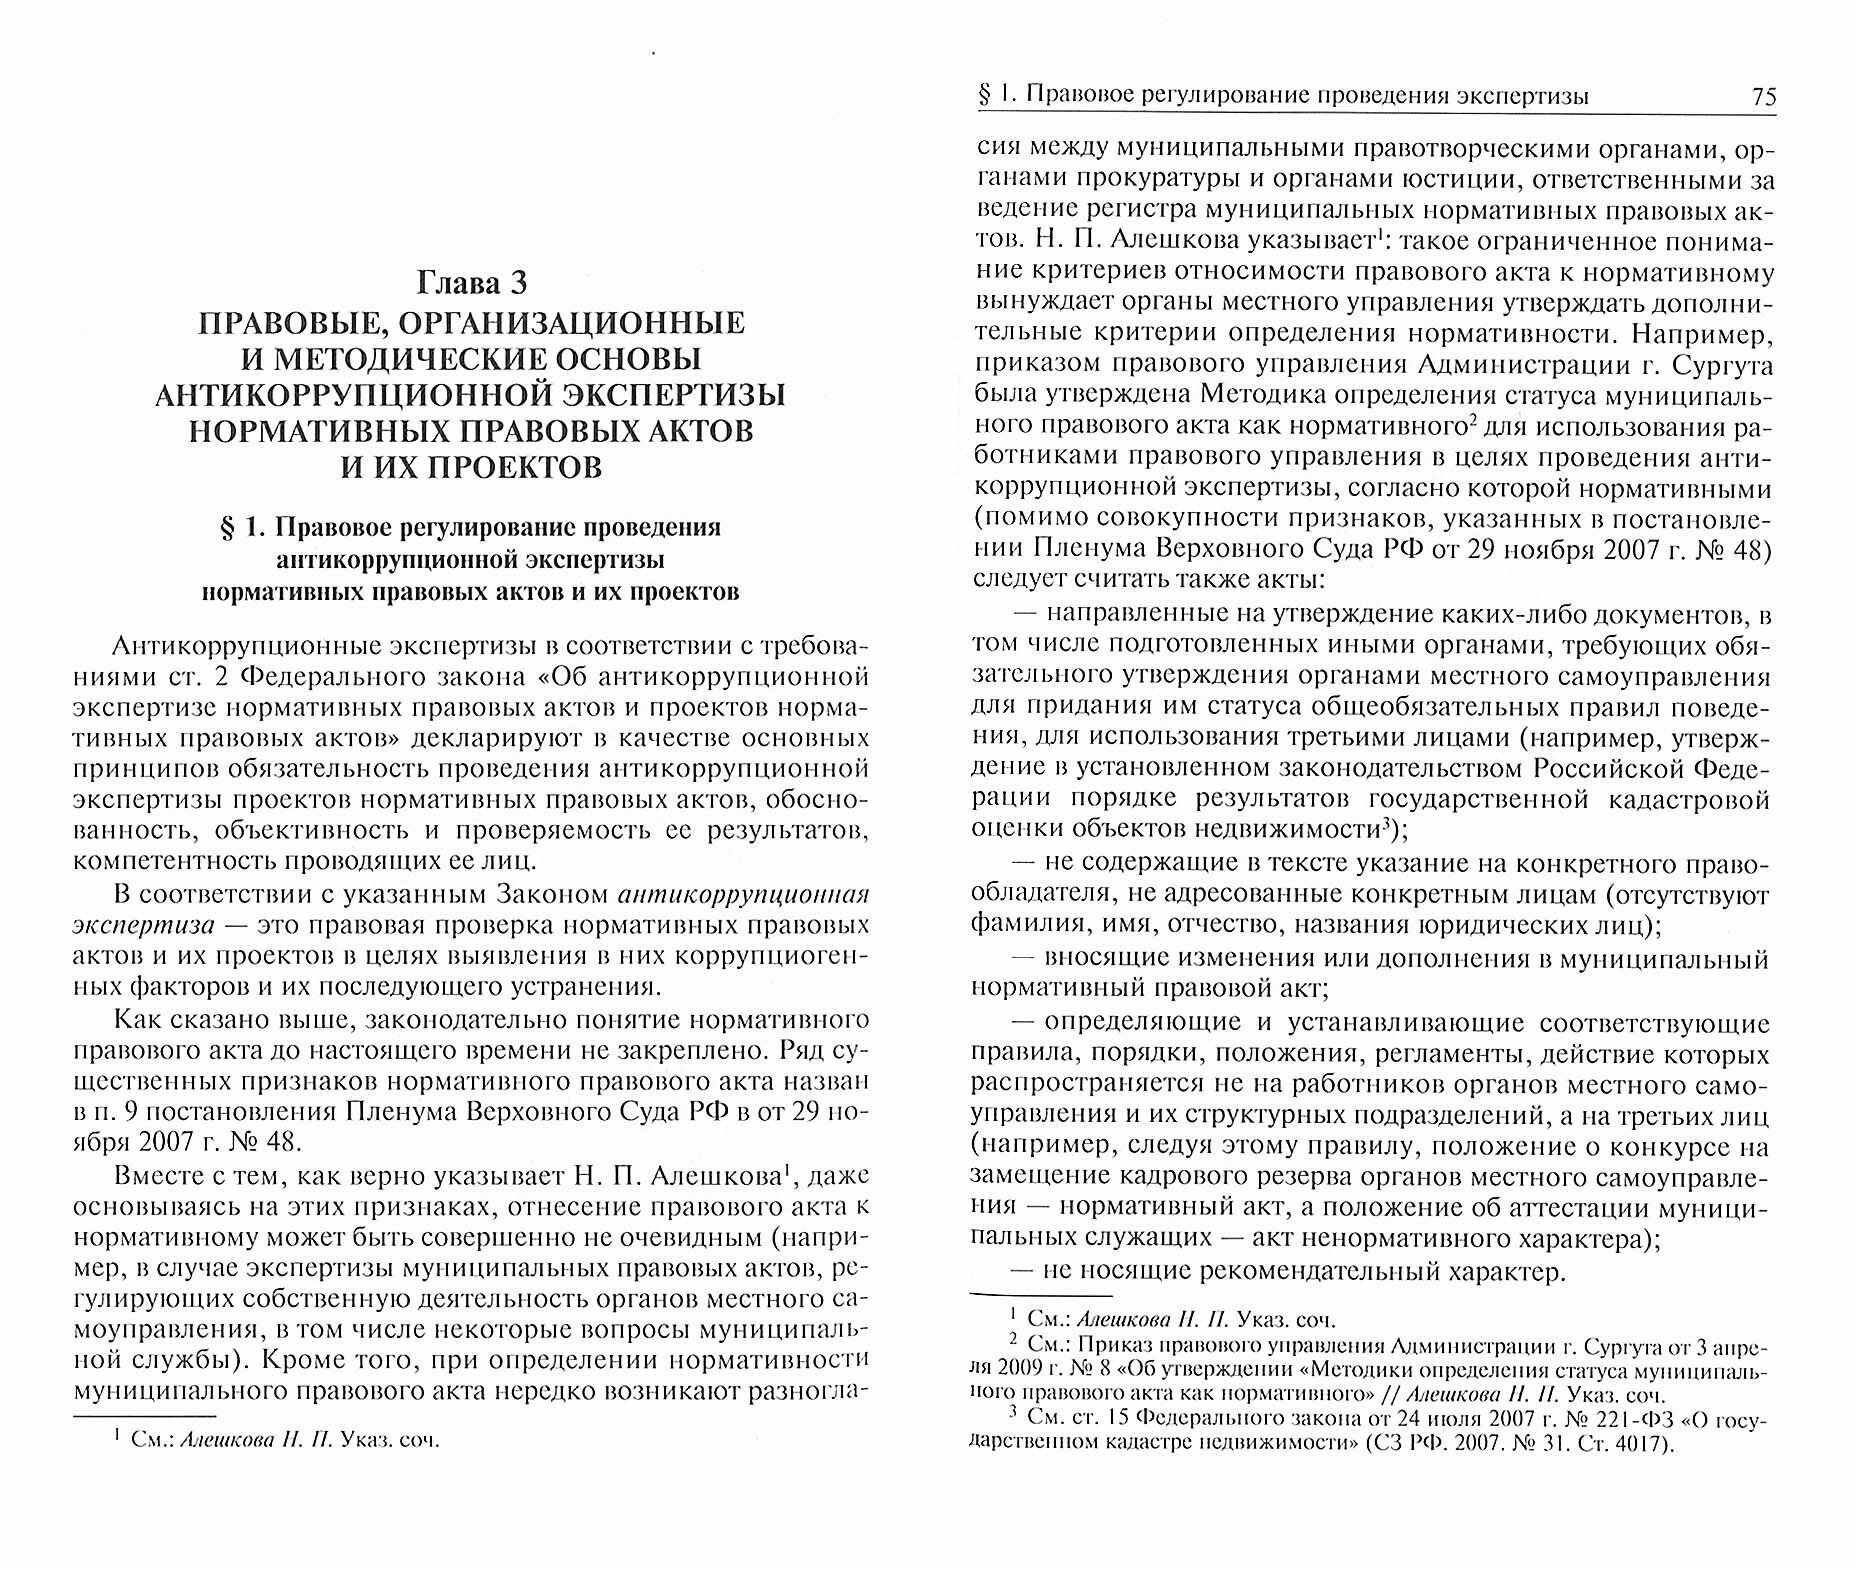 Антикоррупционная экспертиза нормативных правовых актов и их проектов: проблемы теории и практики - фото №2